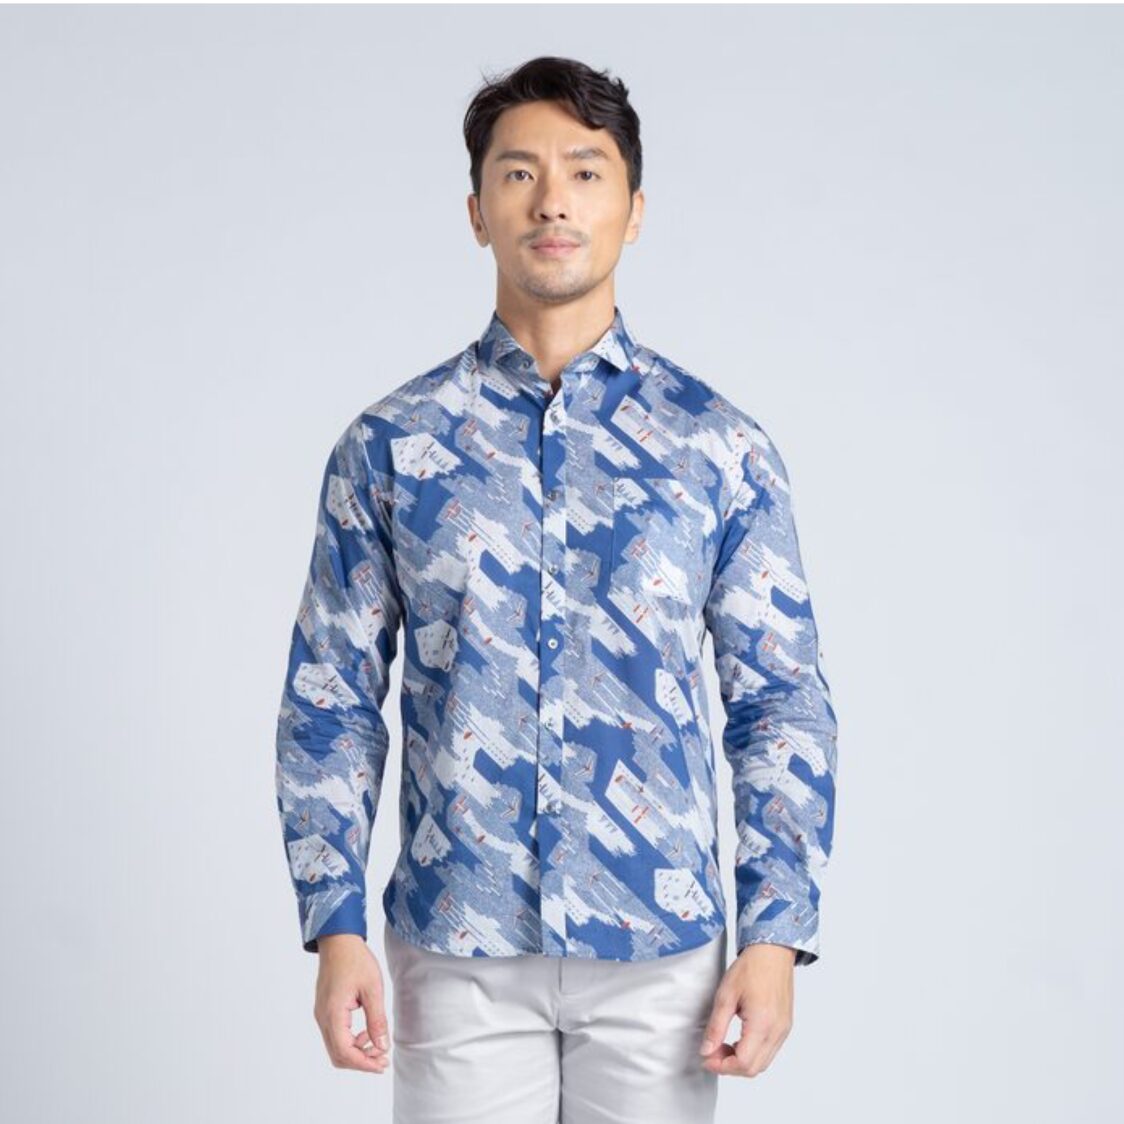 Kurt Woods Made With Liberty Fabric Long Sleeve Spread Collar Shirt Himuro Sky